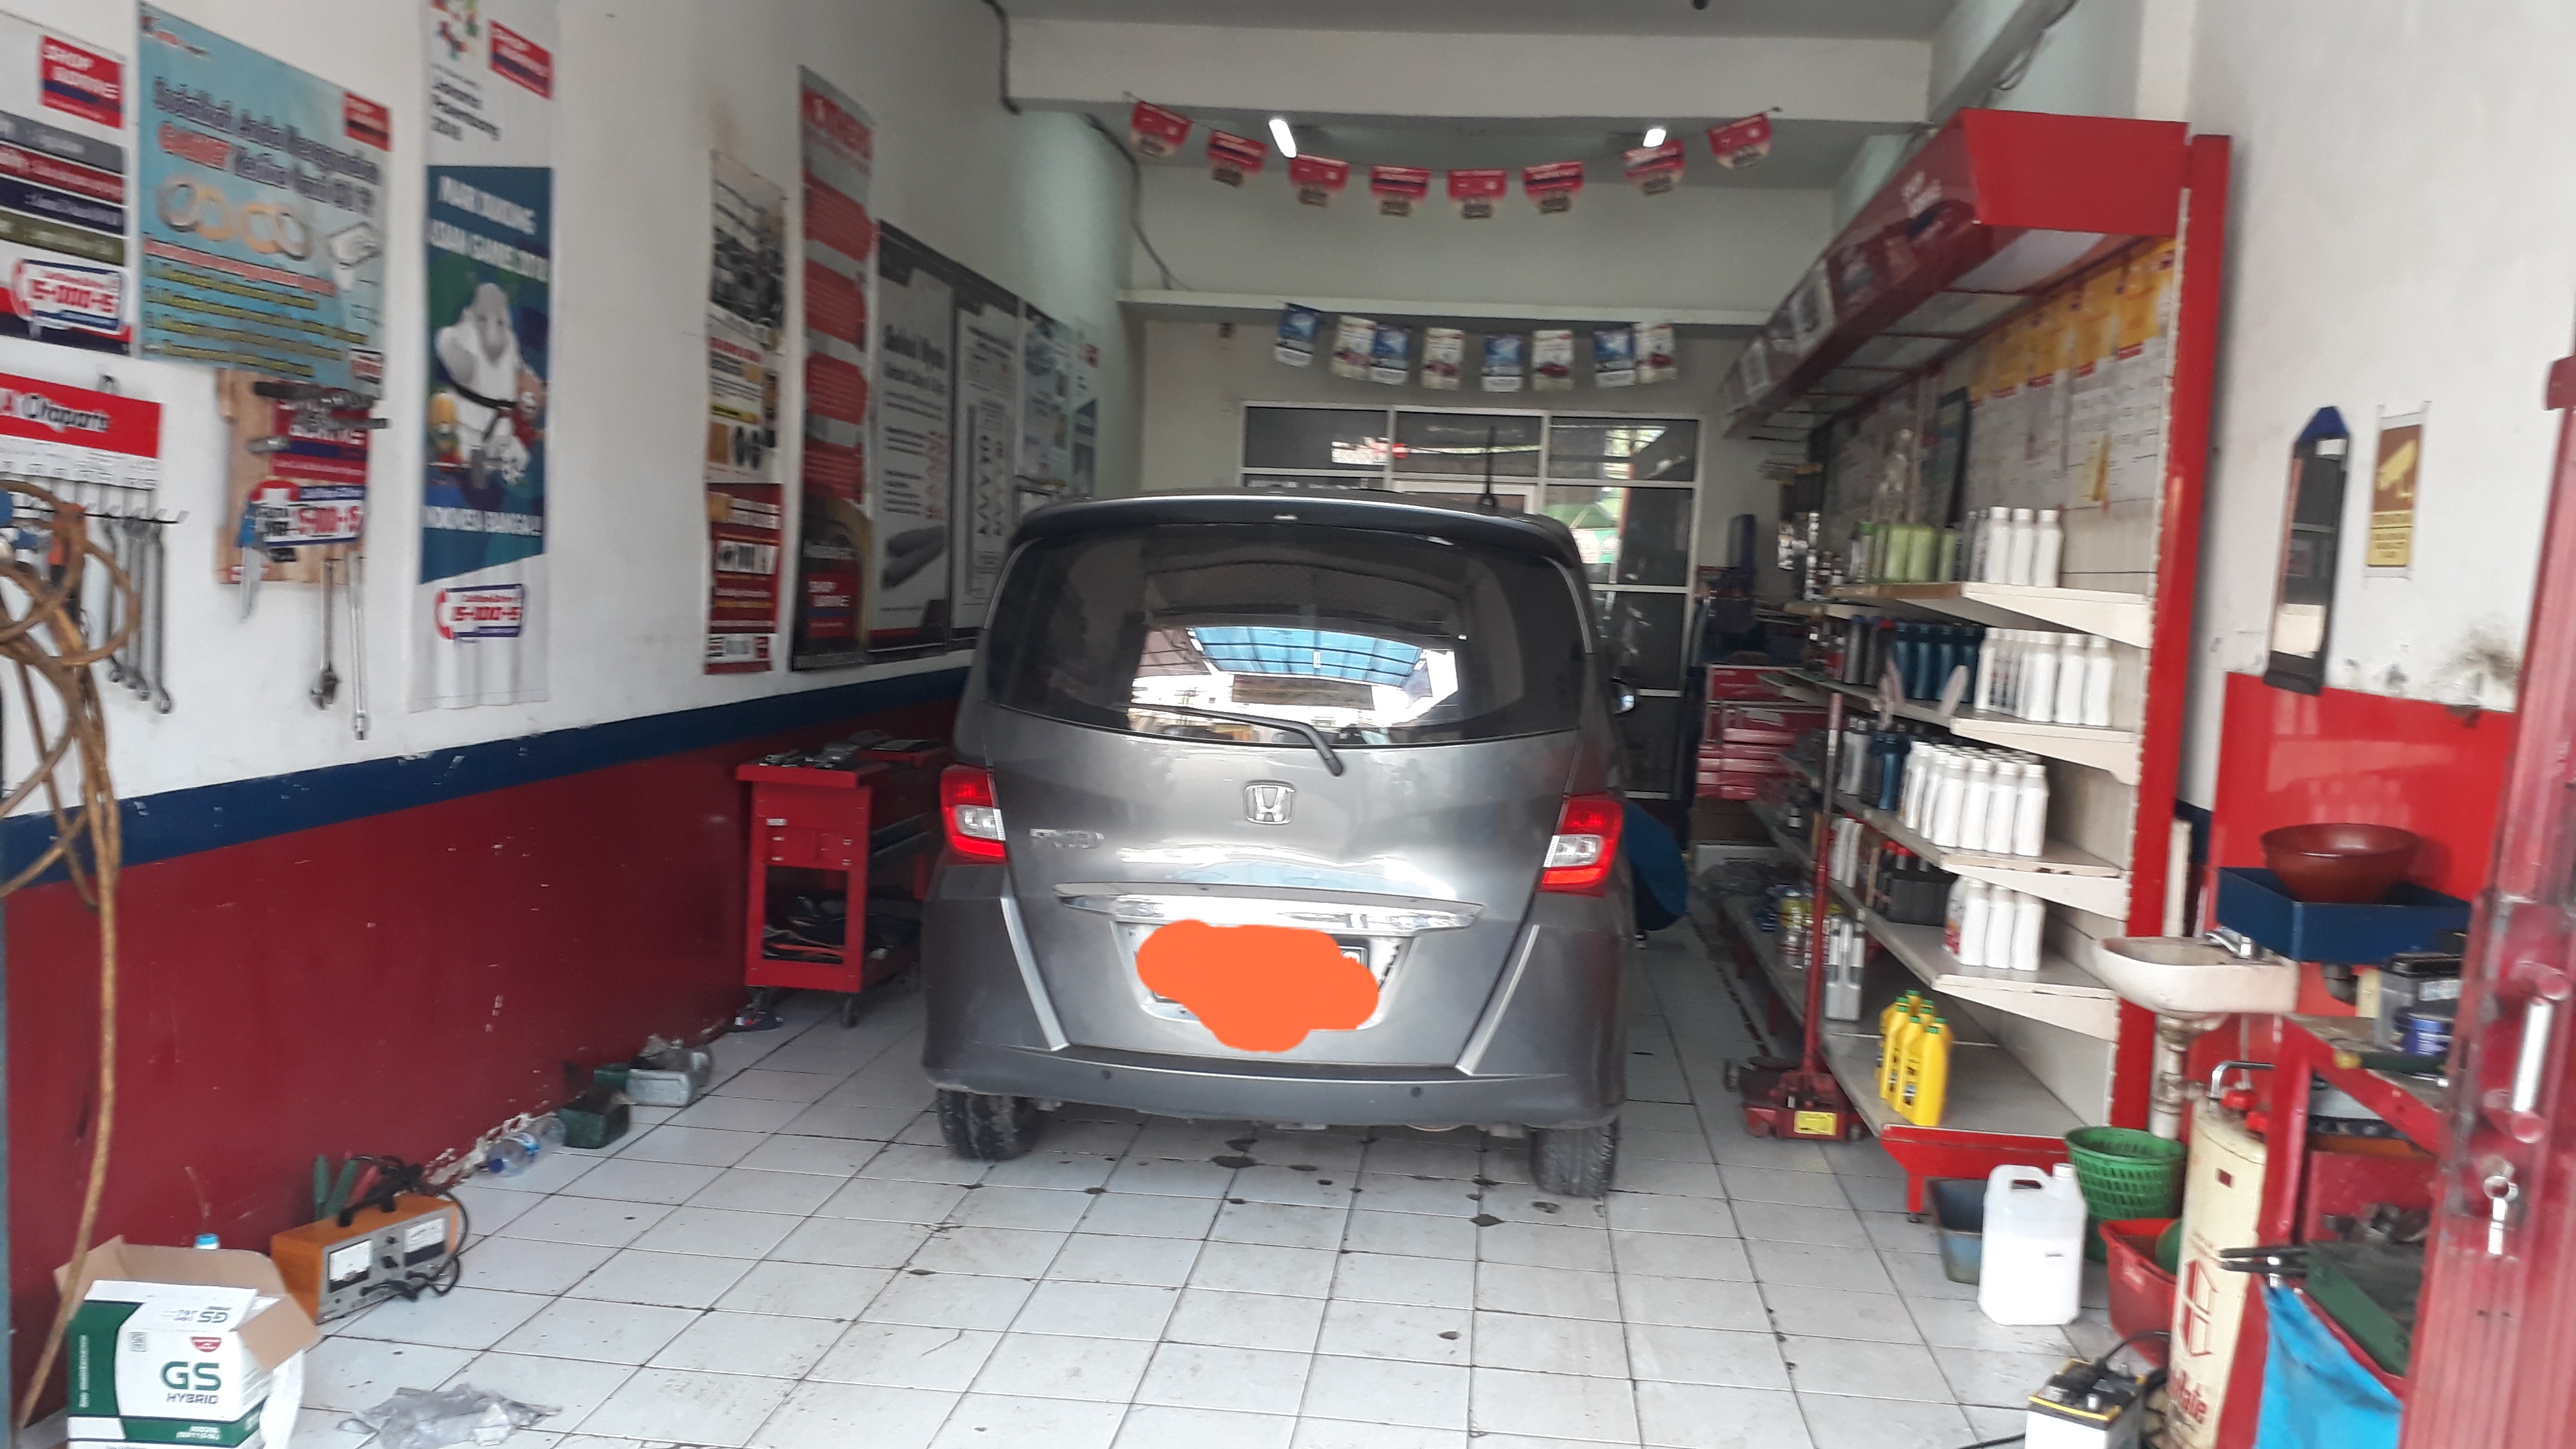 Shop & Drive di Lippo Cikarang untuk Perawatan Ringan Kendaraan Anda